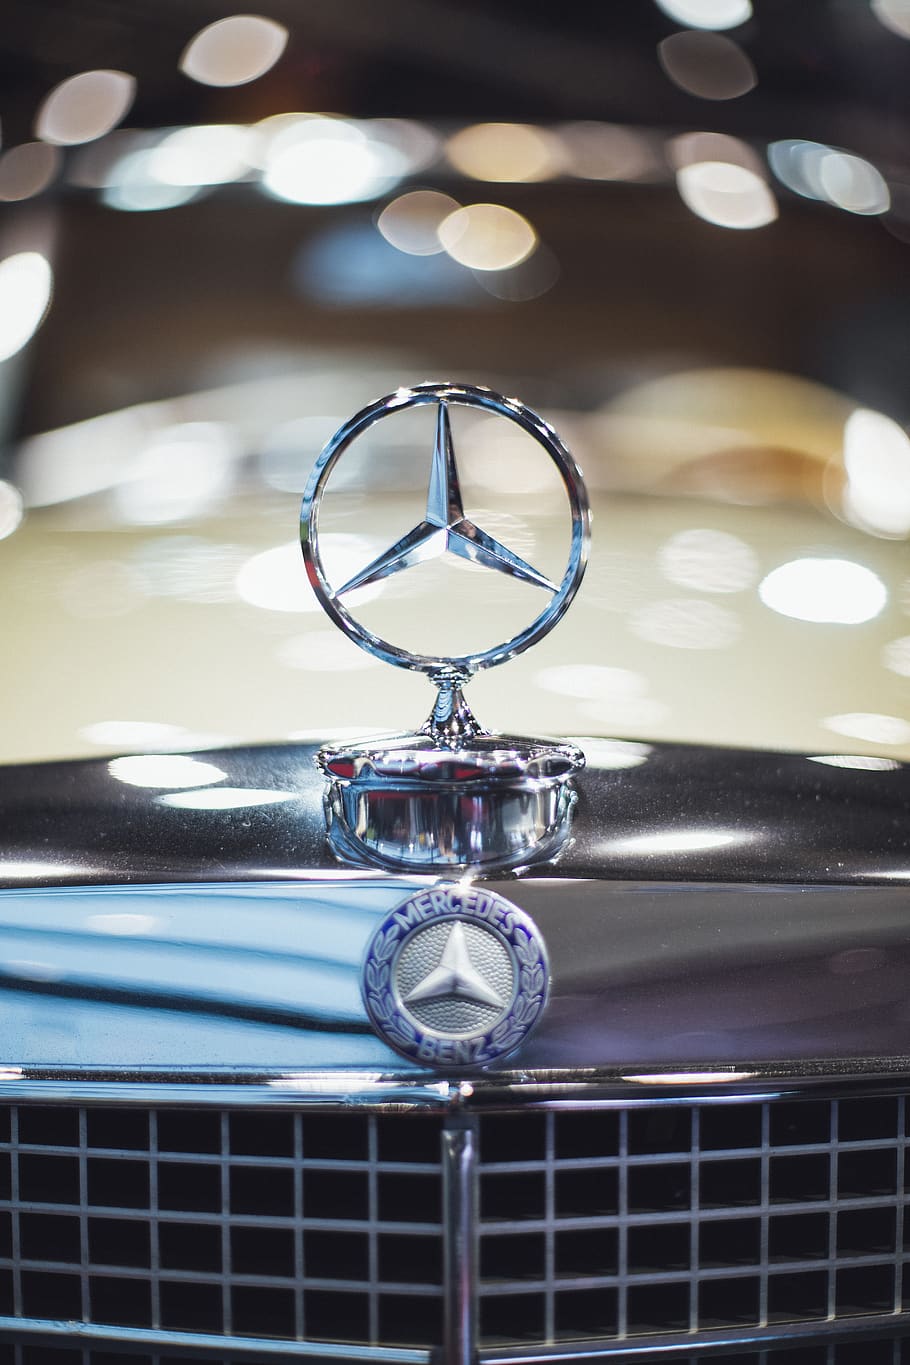 Mercedes Benz Logo, car, close-up, emblem, macro, vehicle, metal